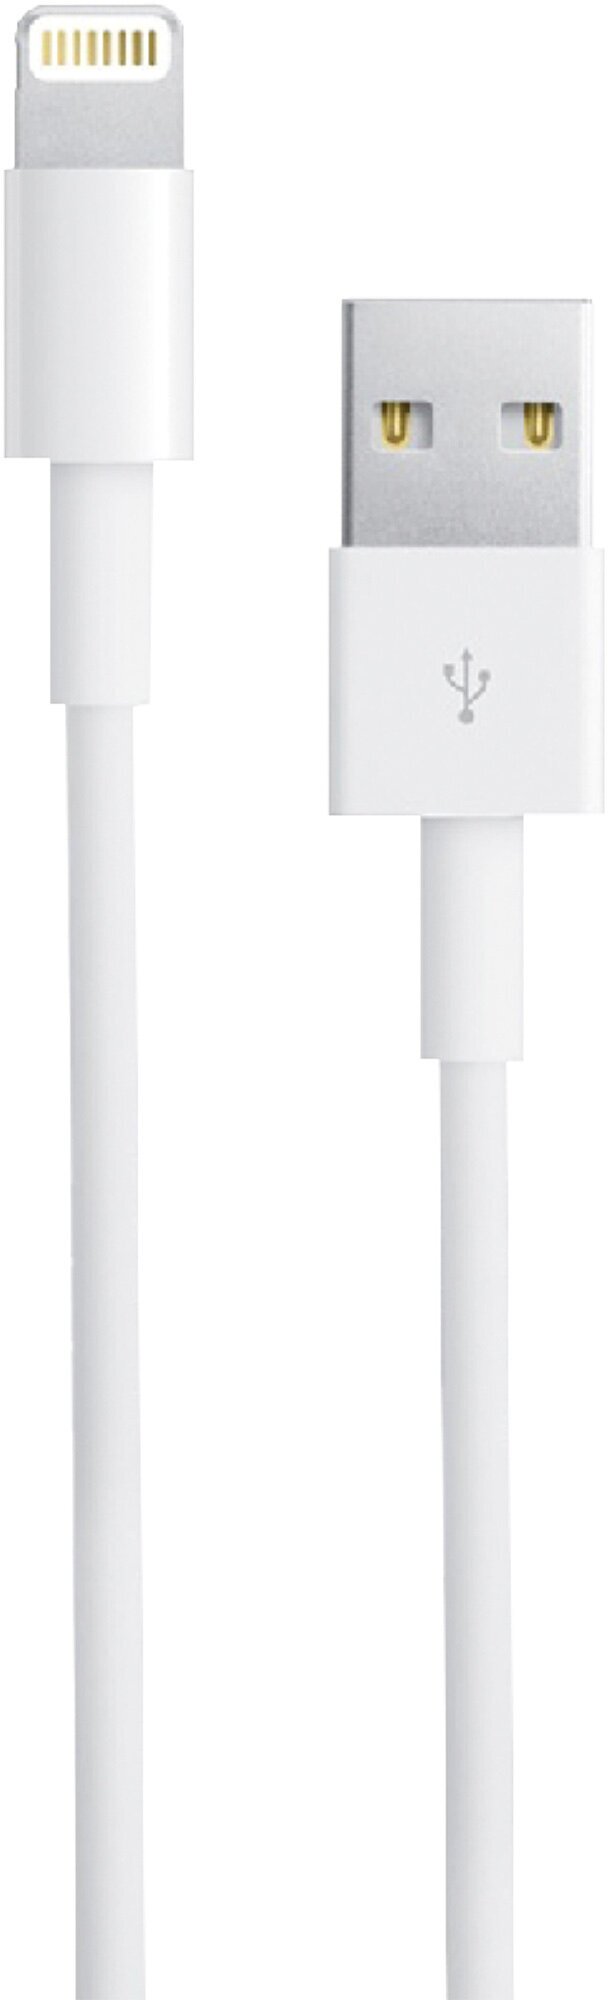 Зарядка для Айфона Кабель для Зарядки iPhone 5-11 и iPad USB Apple Lightning шнур для быстрой зарядки кабель лайтинг